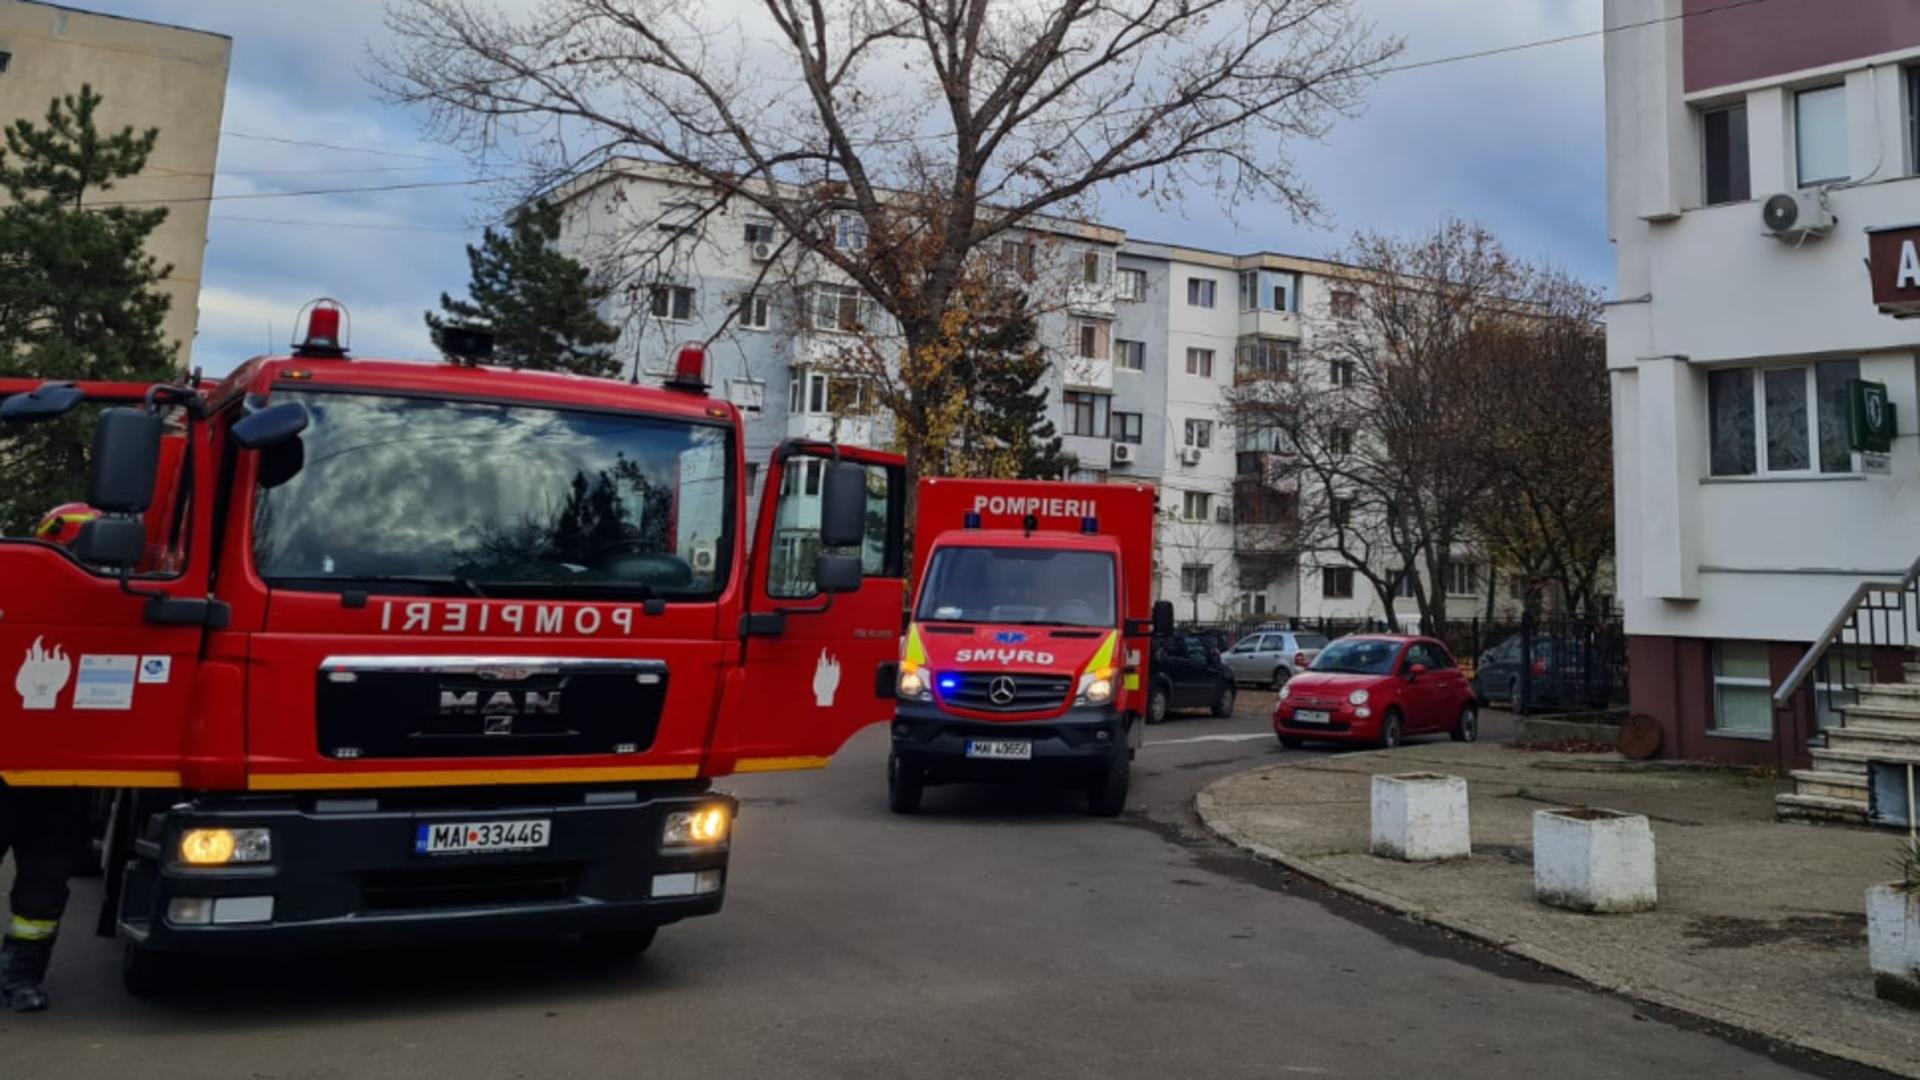 Incendiu în podul unui spital din Ploiești – Pompierii au intervenit de urgență